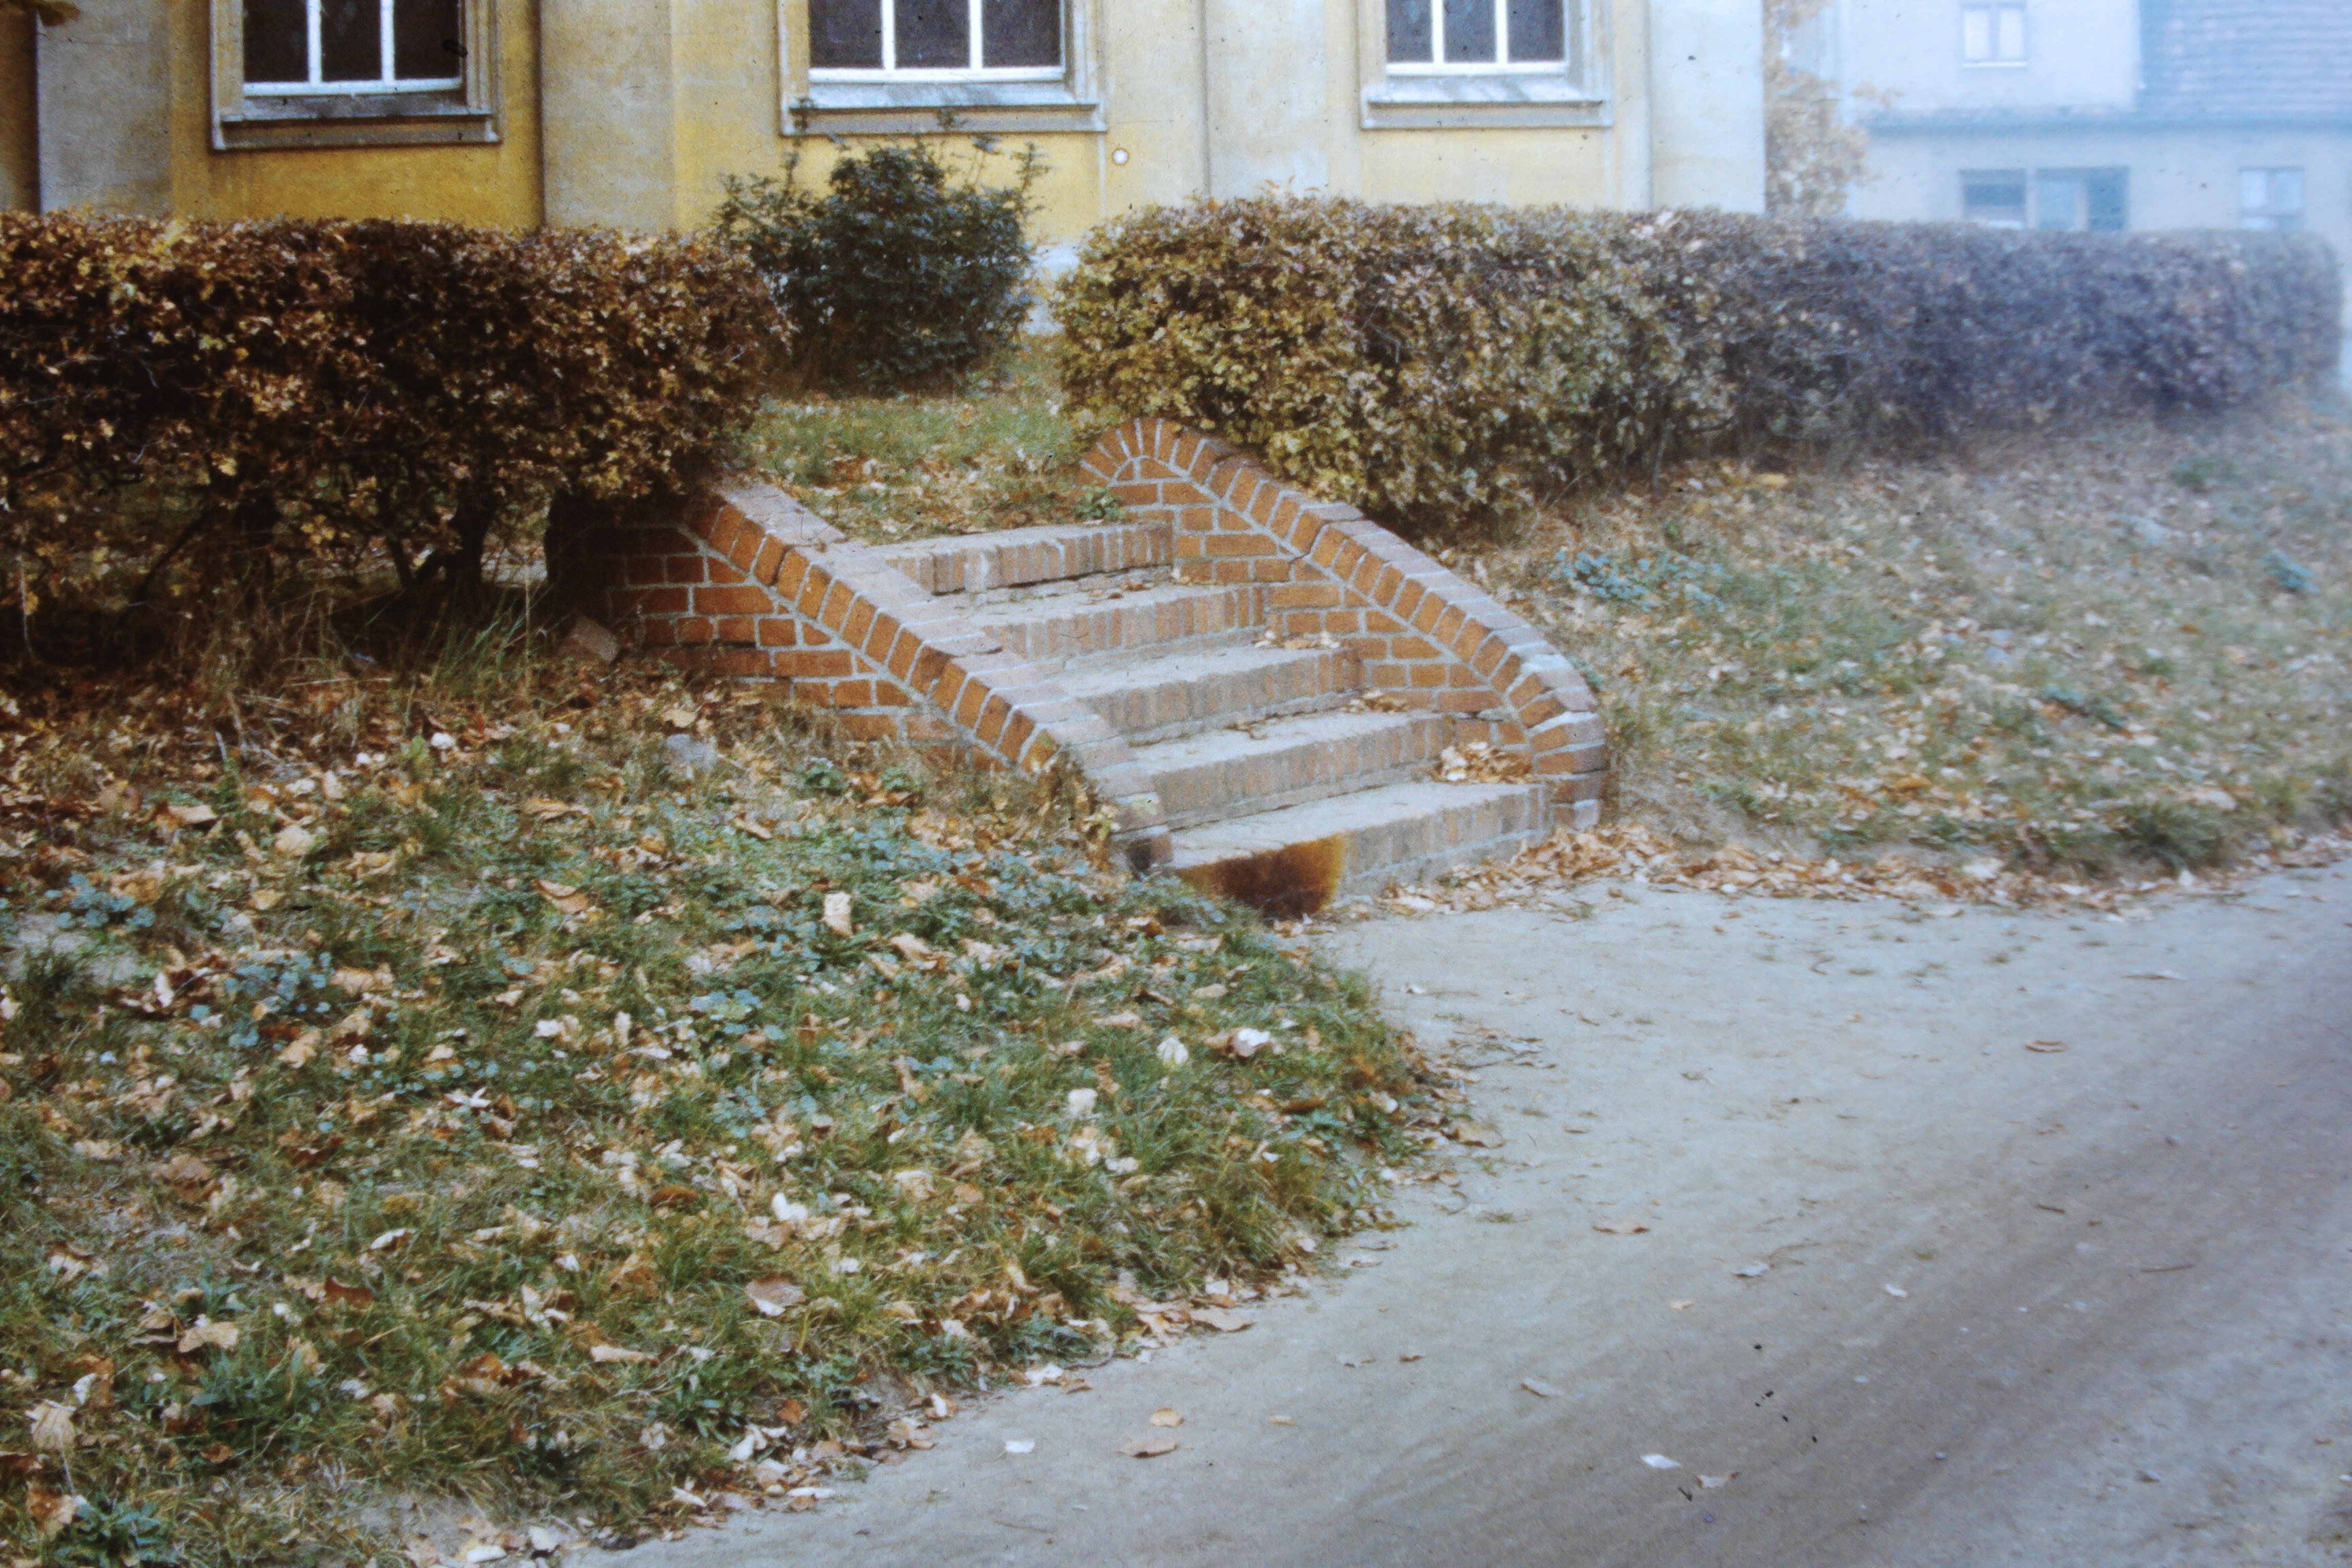 Atomschlagübung "Dosse 83": Rückstände von Rauchgranaten an der Gartentreppe (DDR Geschichtsmuseum im Dokumentationszentrum Perleberg CC BY-SA)